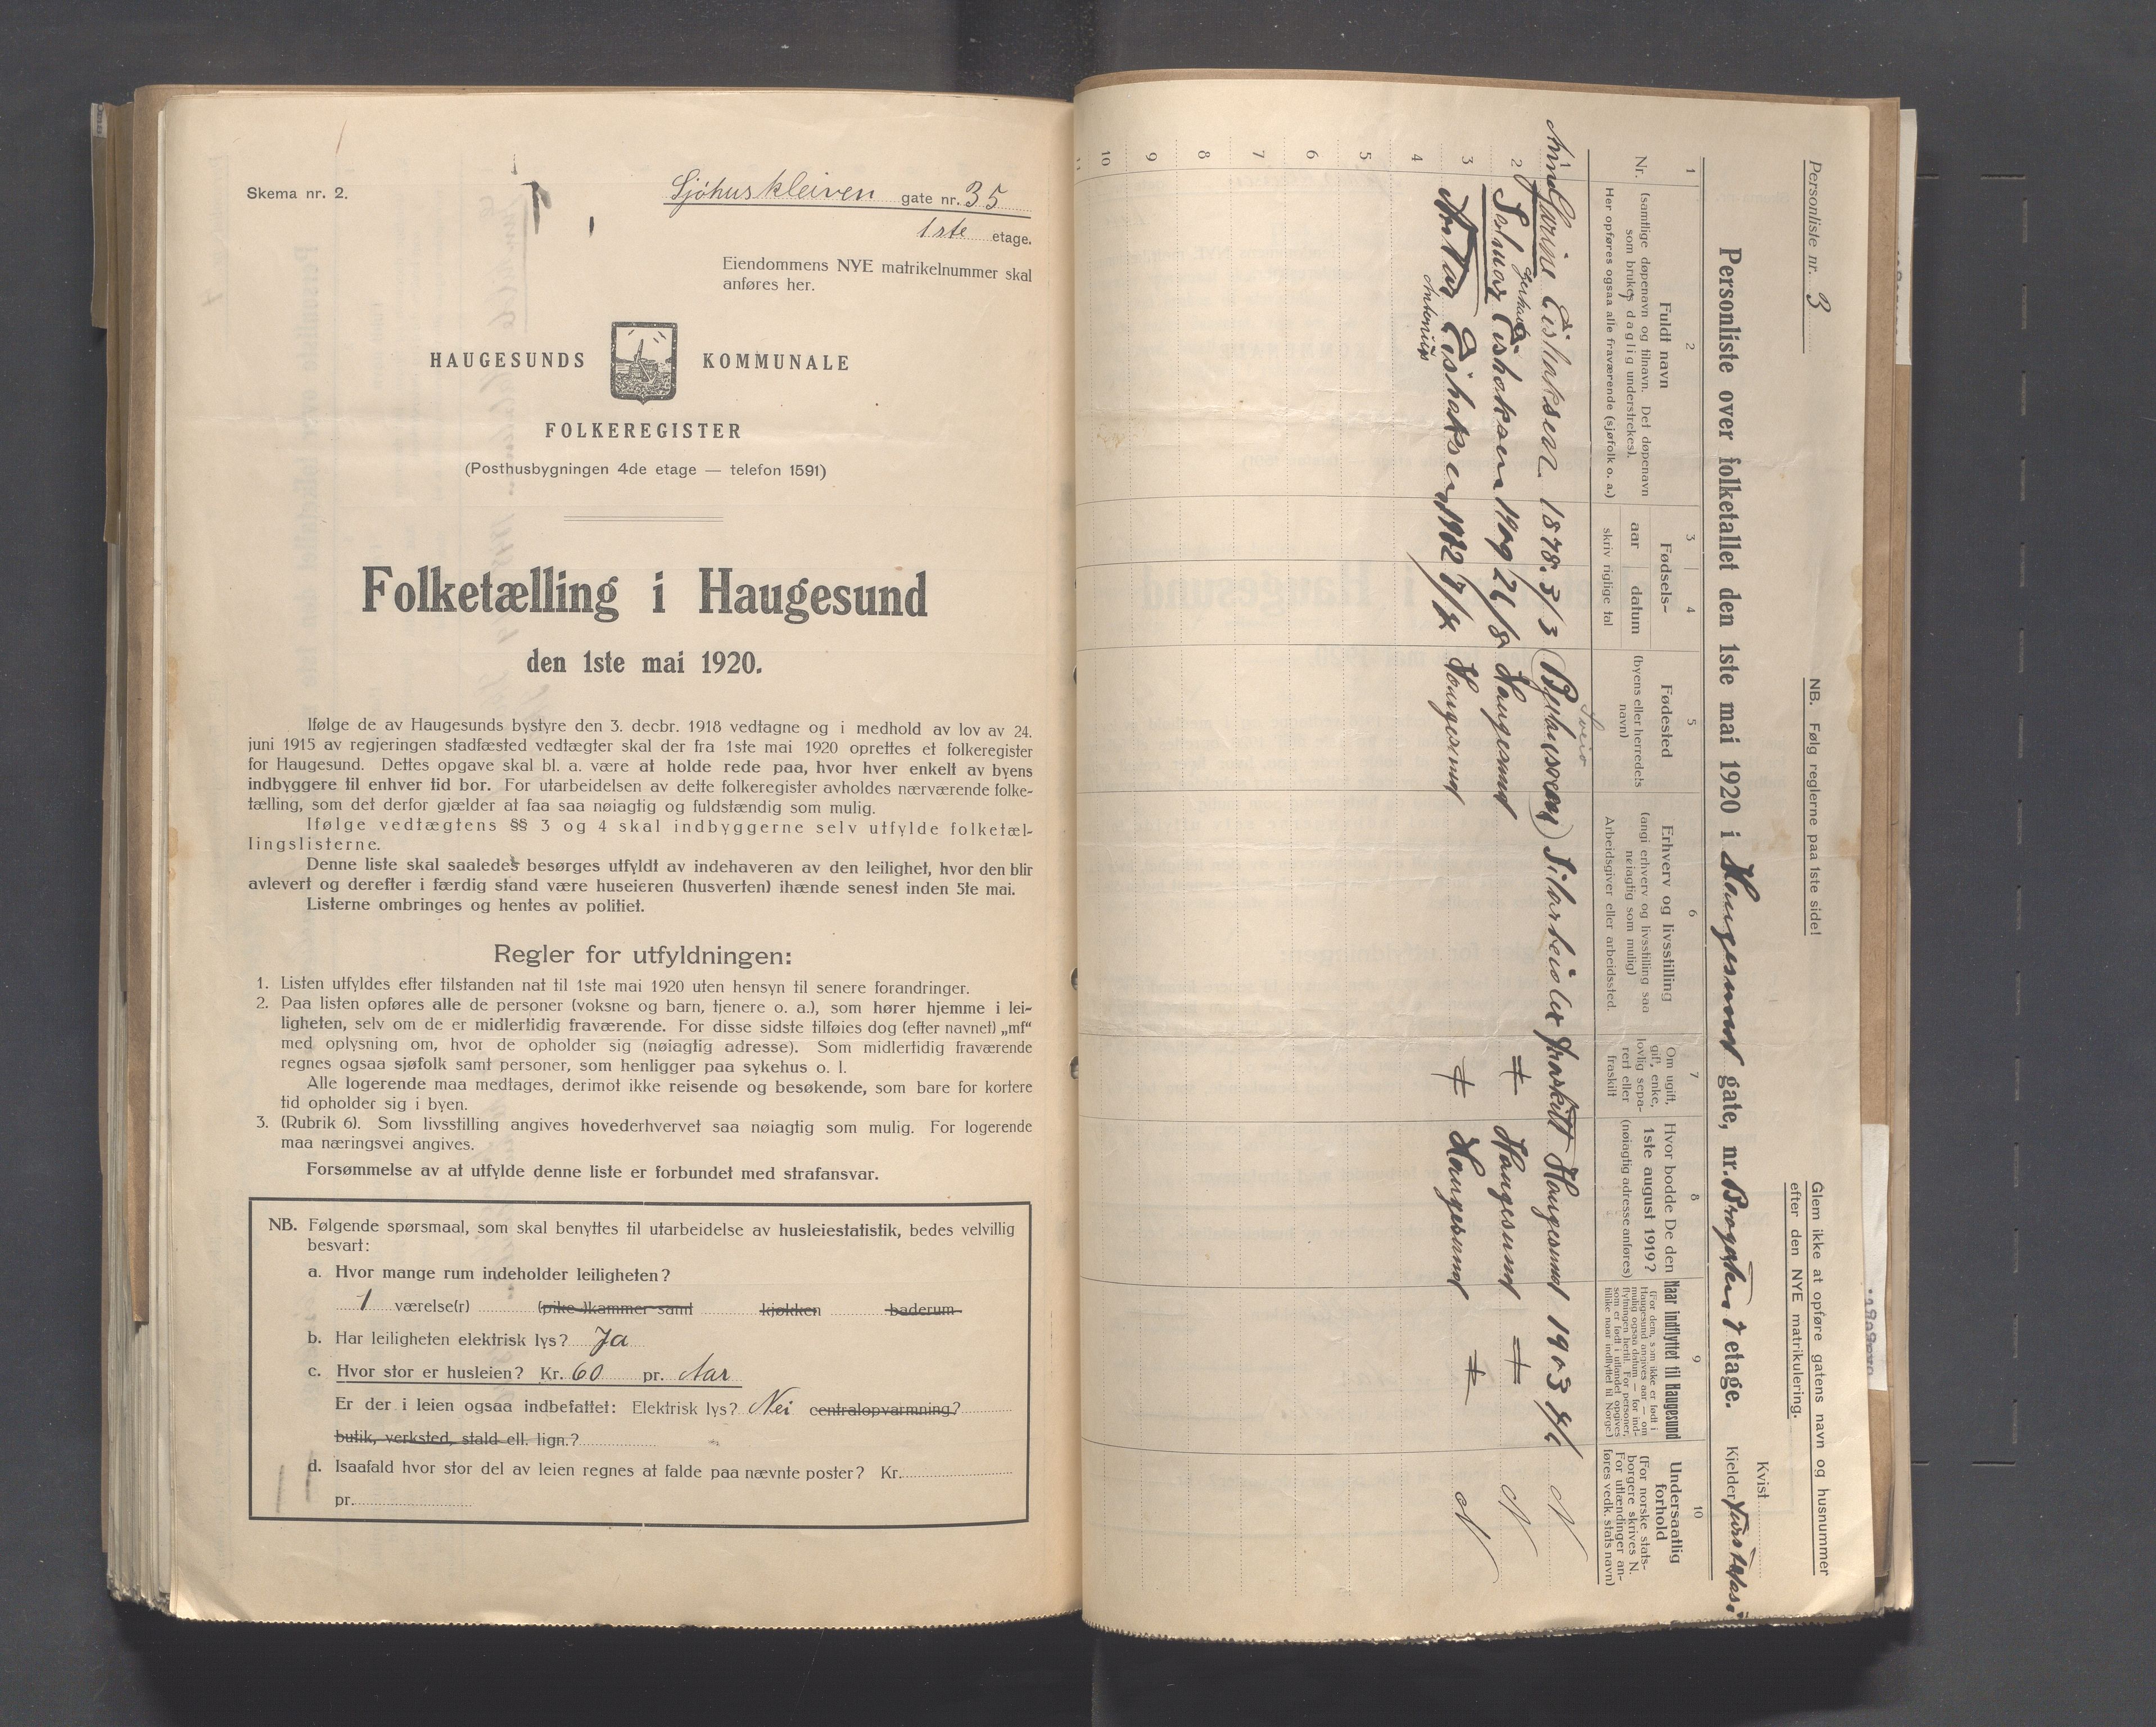 IKAR, Local census 1.5.1920 for Haugesund, 1920, p. 6297